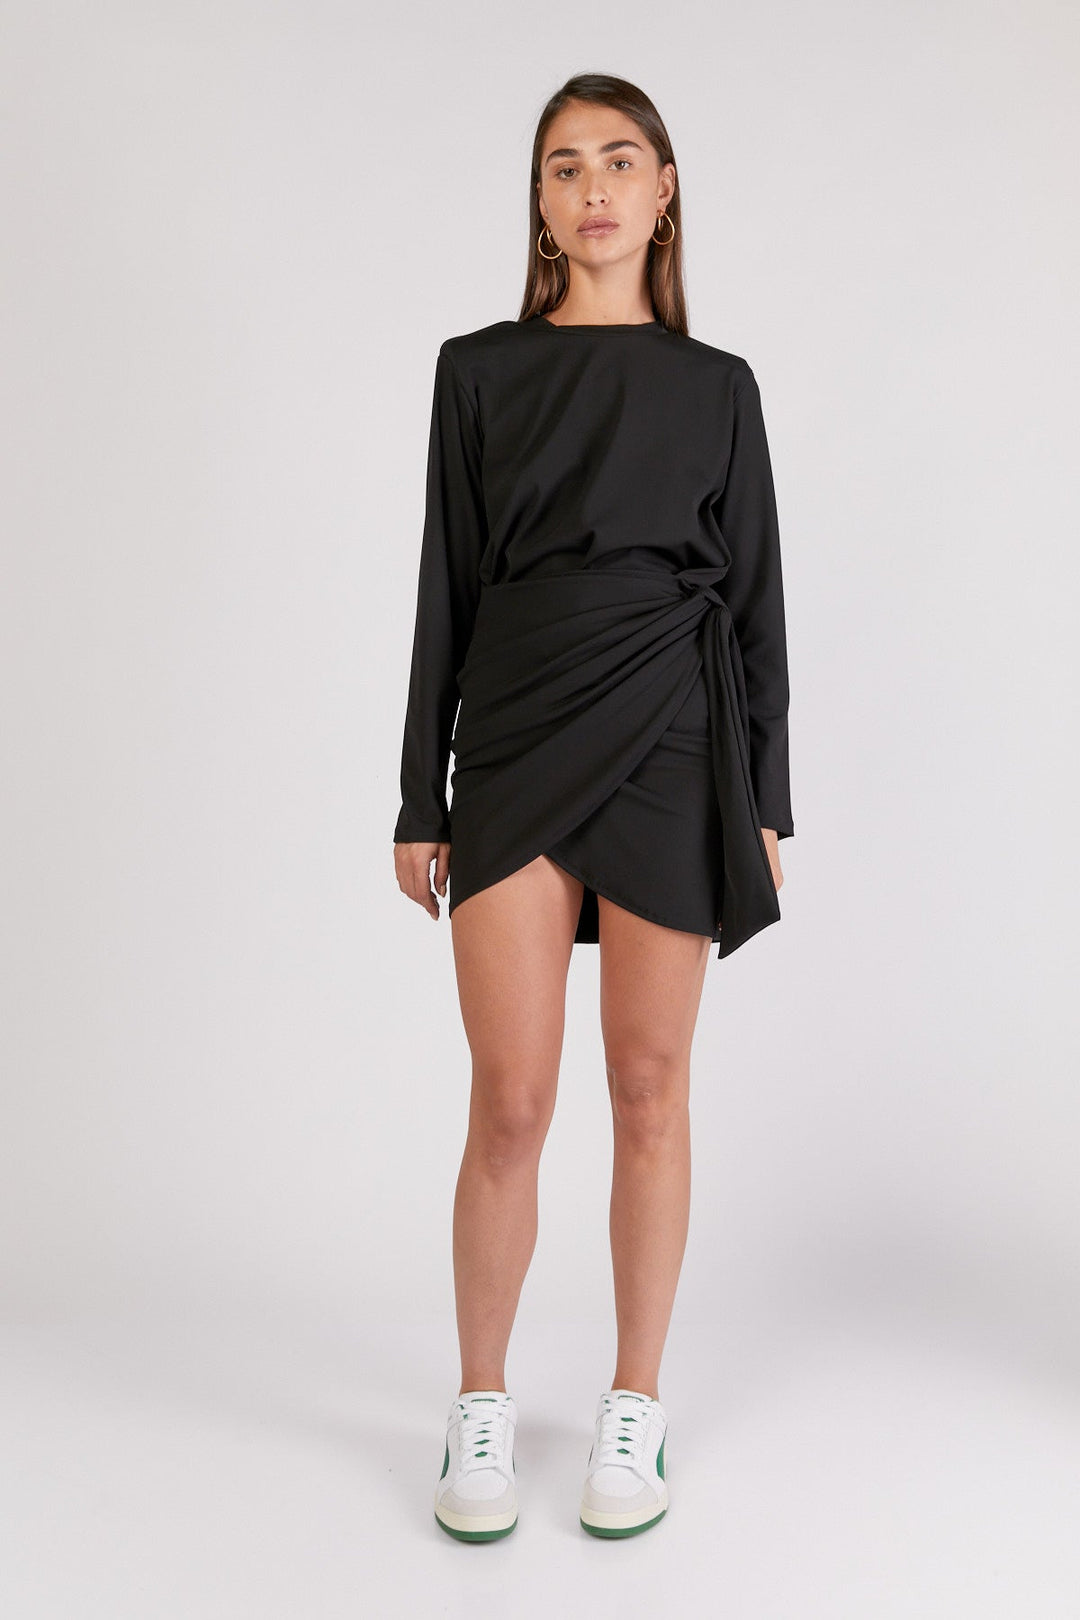 חצאית אלבינה בצבע שחור - Dana Sidi